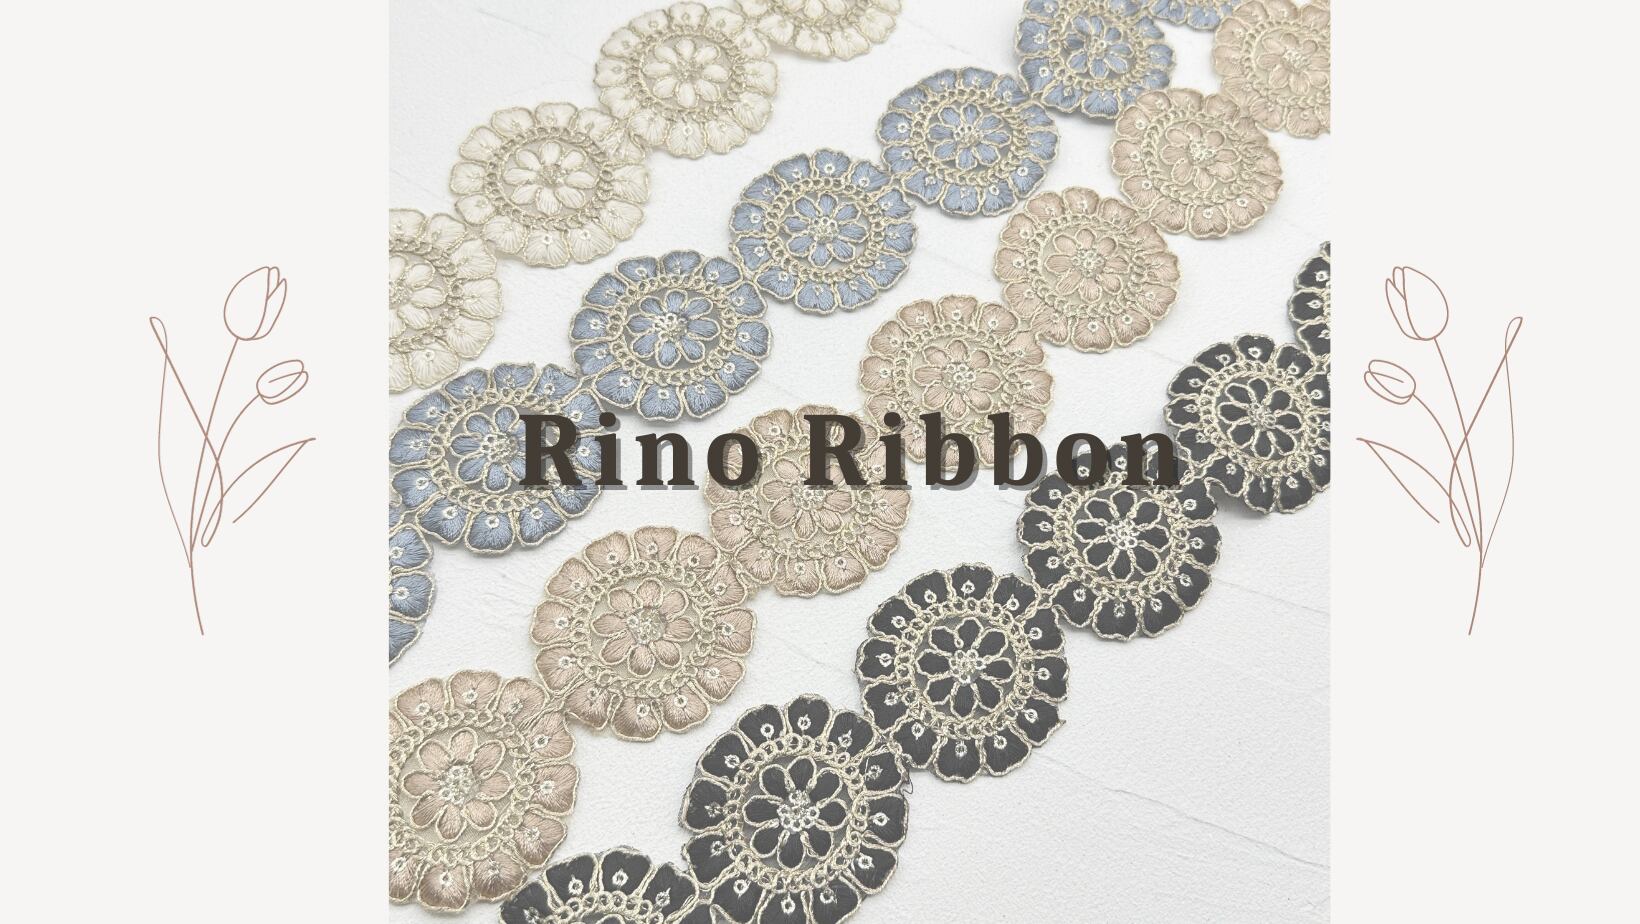 インド刺繍リボン専門店Rino Ribbon